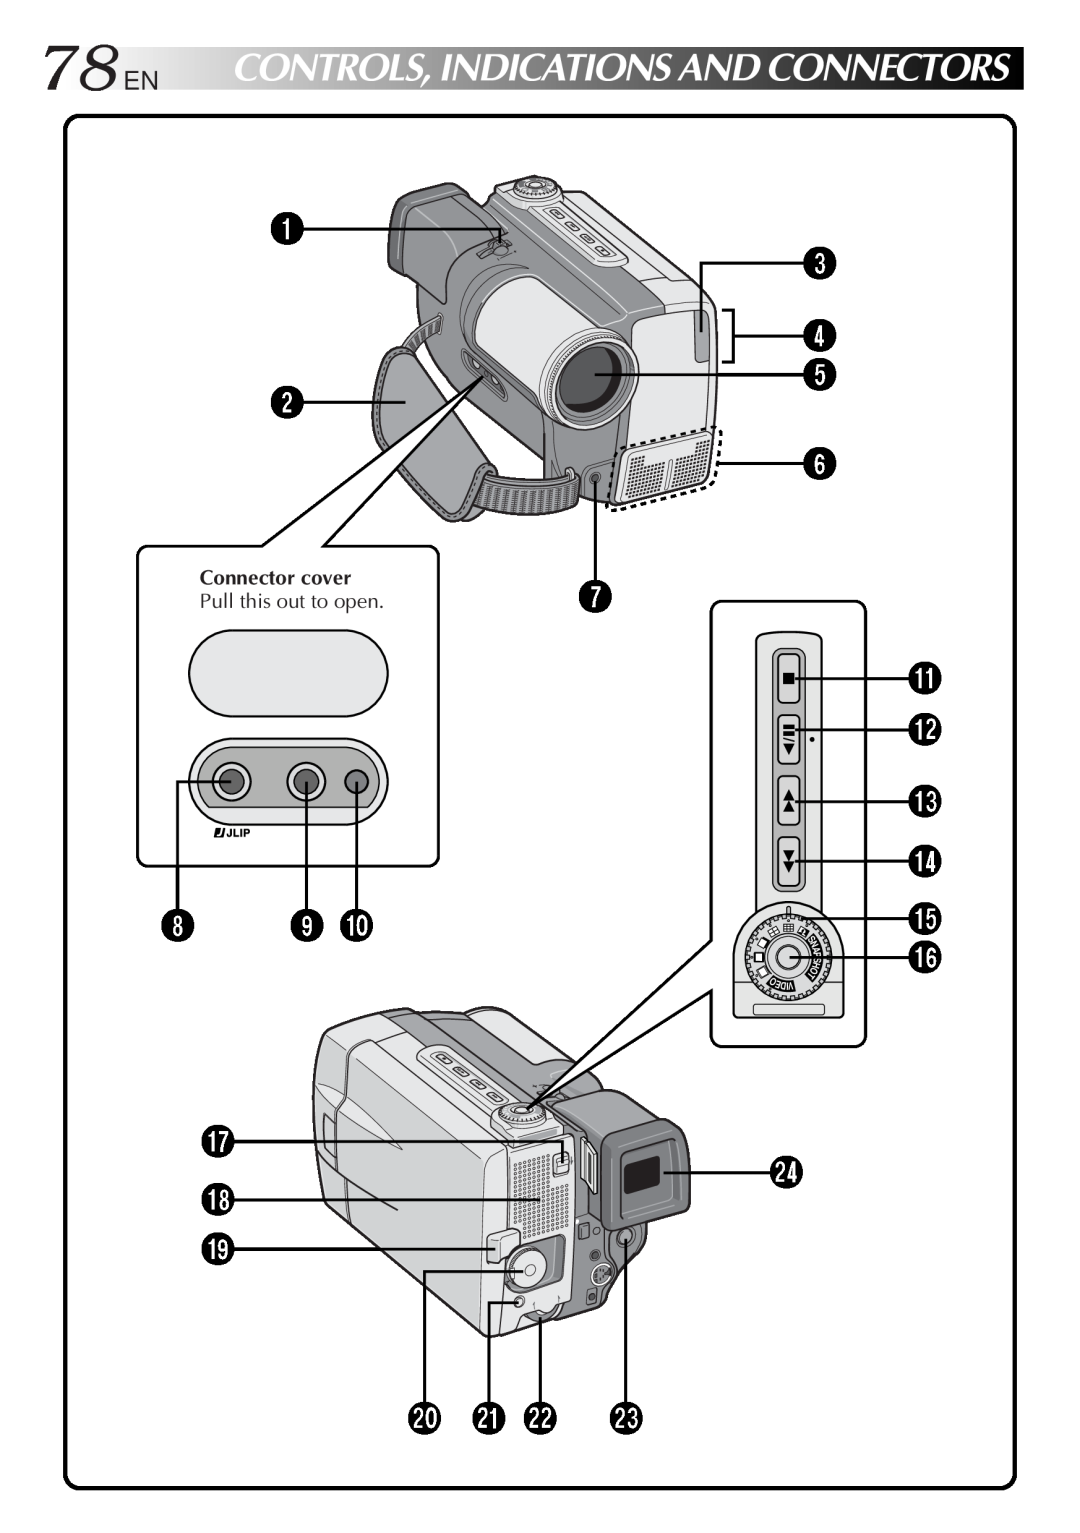 JVC GR-DVL9000 manual 78EN, 3 4 5 6 7, @ # $ %, q w e, Controls,Indicationsandconnectors, Connector cover, Ediv 